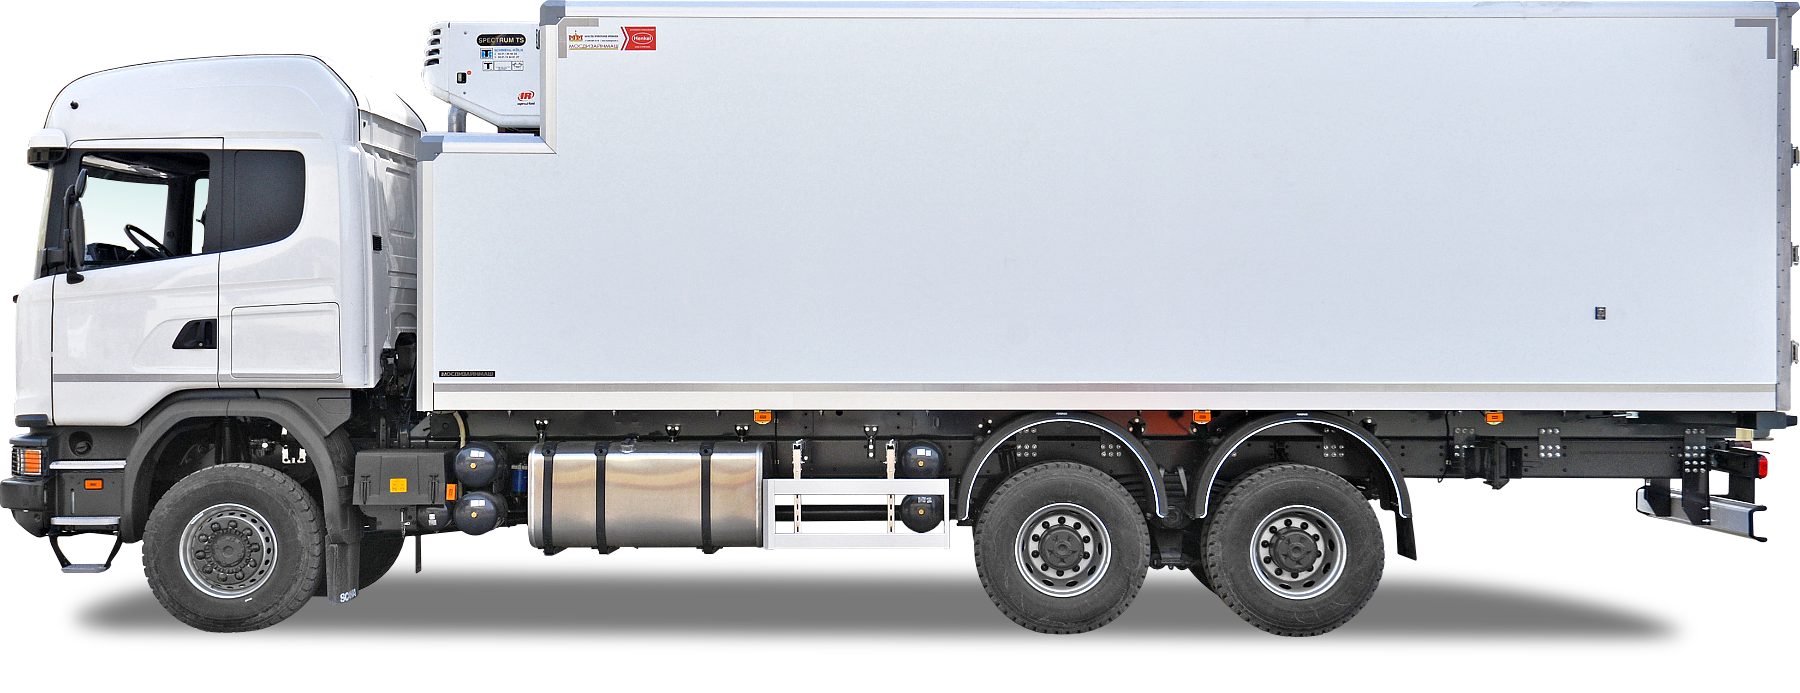 Soğuk donuk gıda kamyon, treyler, kamyonet kasa CTP levha Decopan Commercial Vehicle (Ticari Araç)